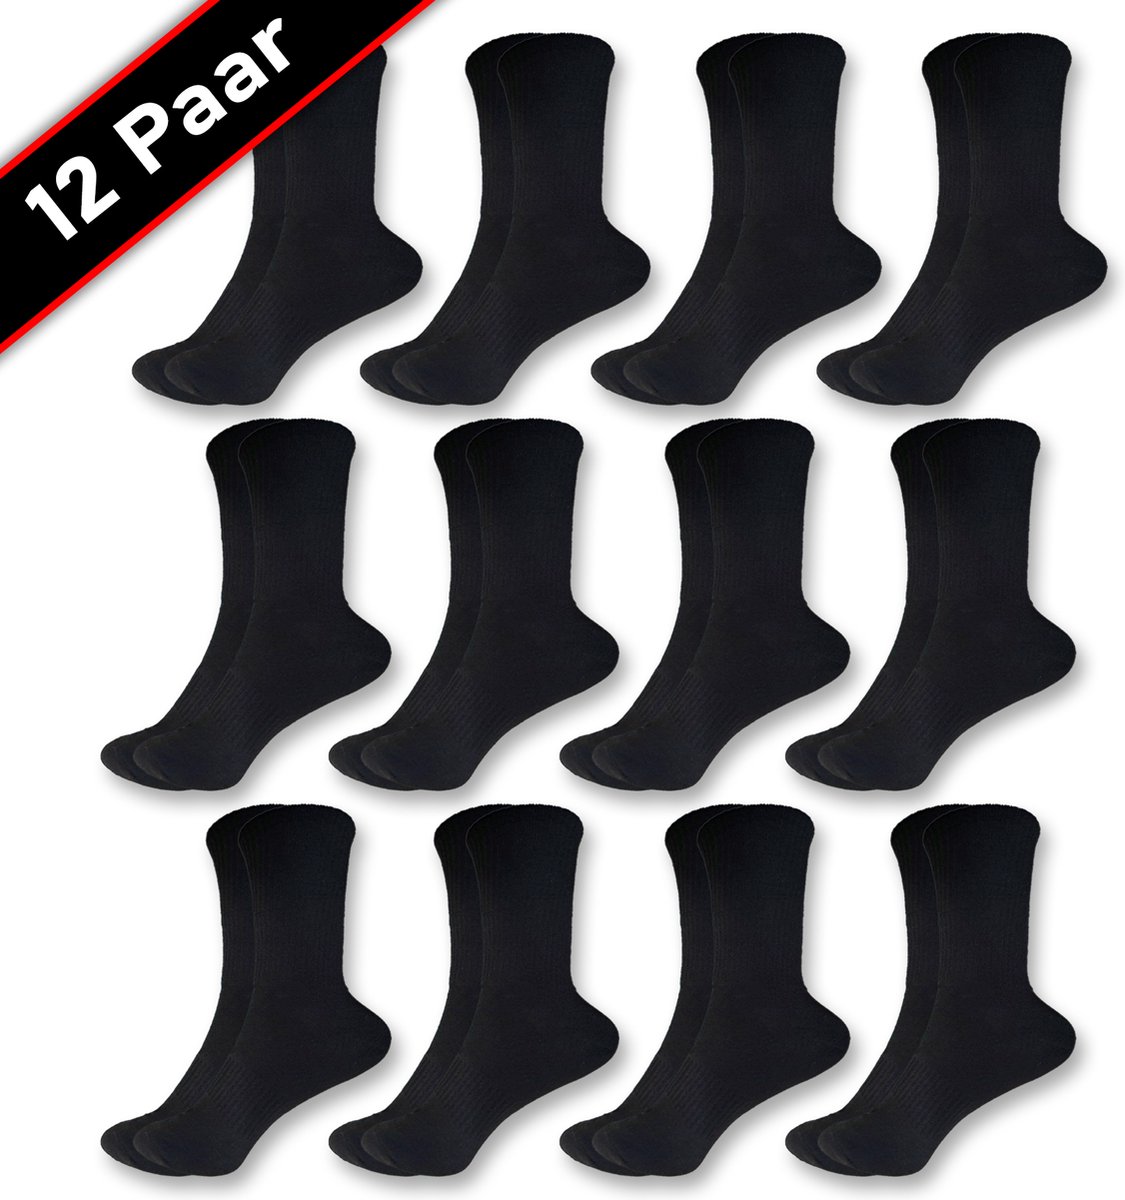 Blacktag Katoenen Hoge Sokken 12 paar Zwart Maat 36-43